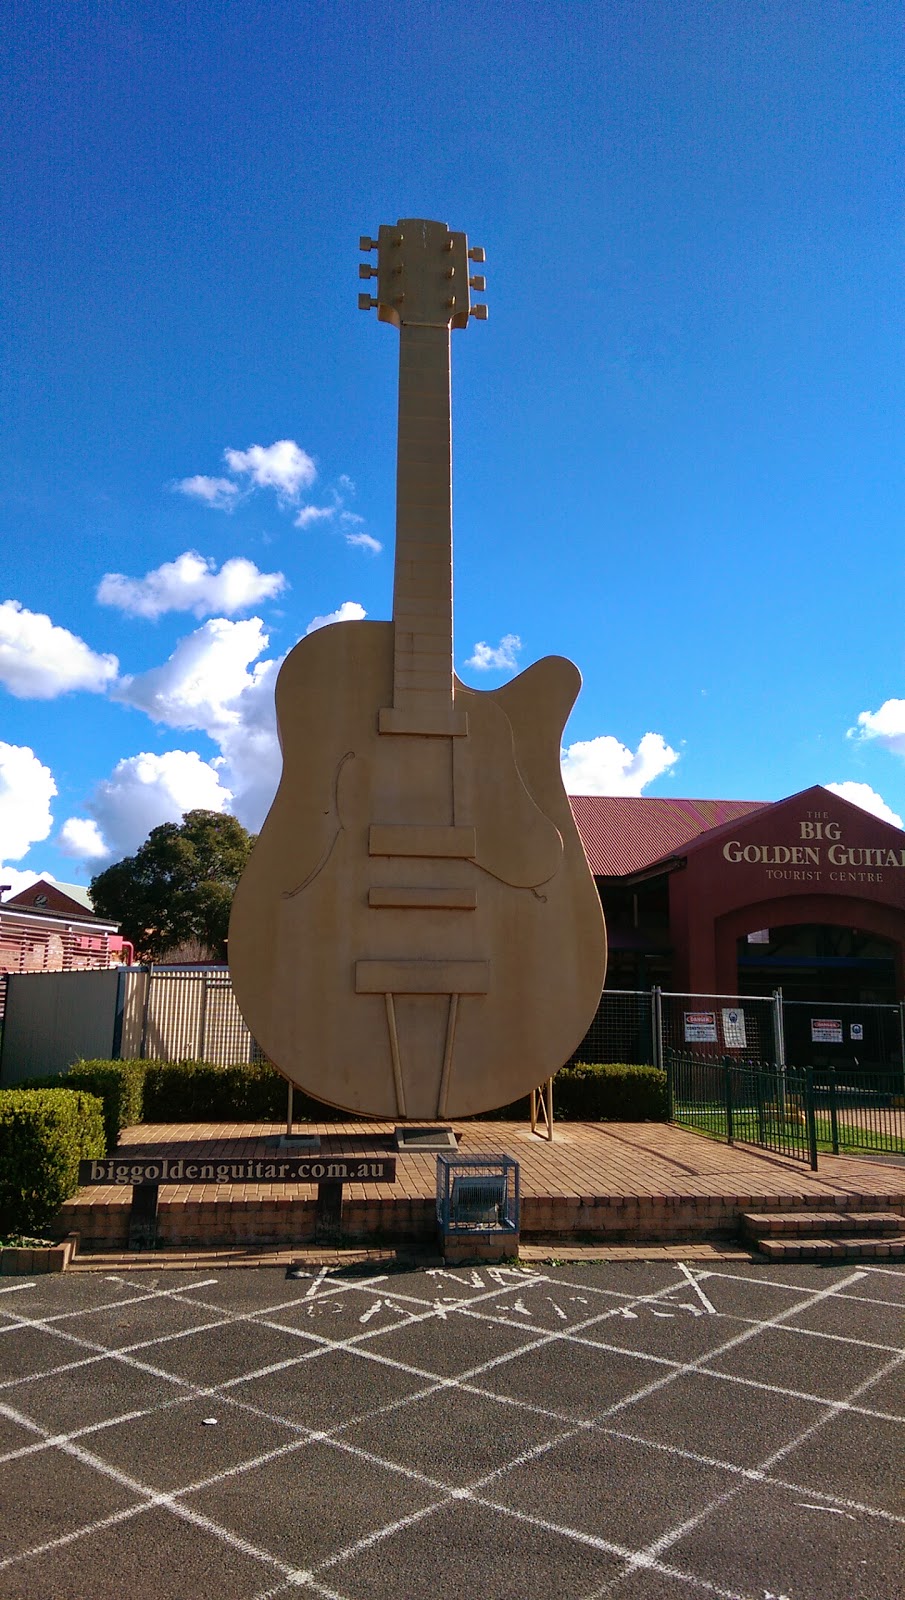 Golden Guitar Motor Inn | lodging | 2-8 The Ringers Rd, East Tamworth NSW 2340, Australia | 0267622999 OR +61 2 6762 2999